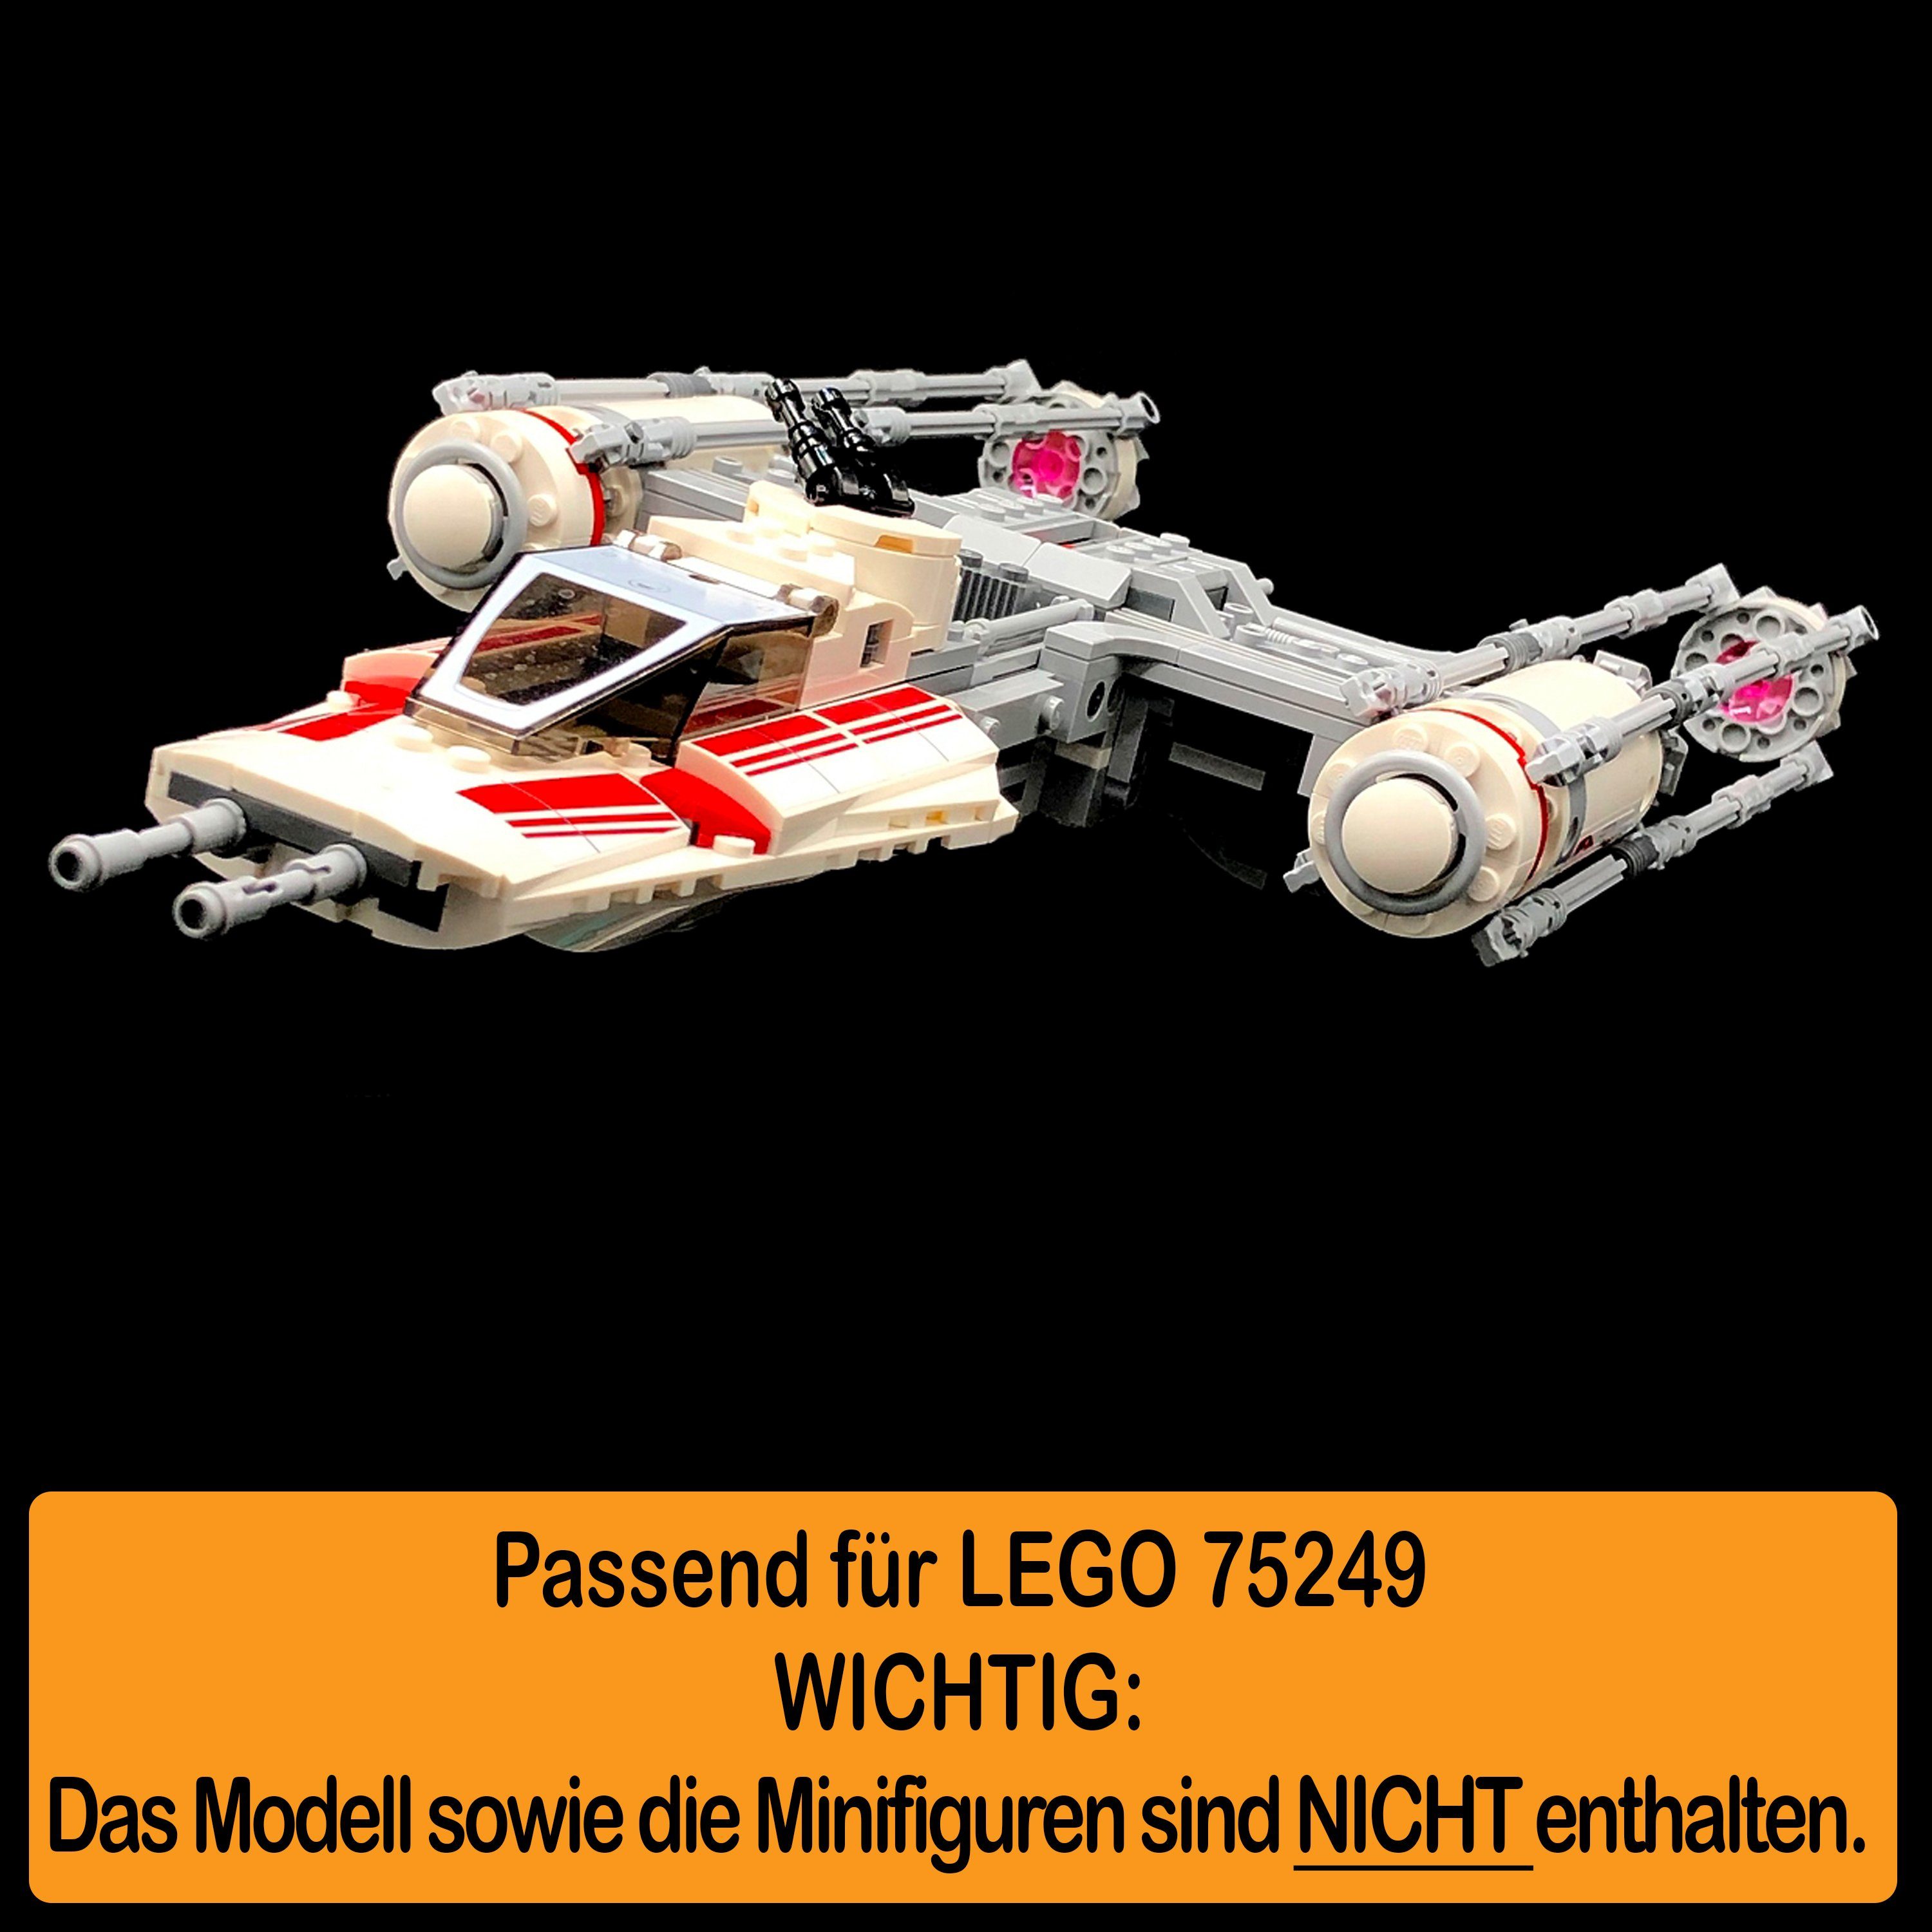 zusammenbauen), Y-Wing LEGO Resistance Starfighter 100% Winkel für AREA17 einstellbar, Germany Positionen 75249 Standfuß in Made Stand Acryl selbst zum und Display (verschiedene